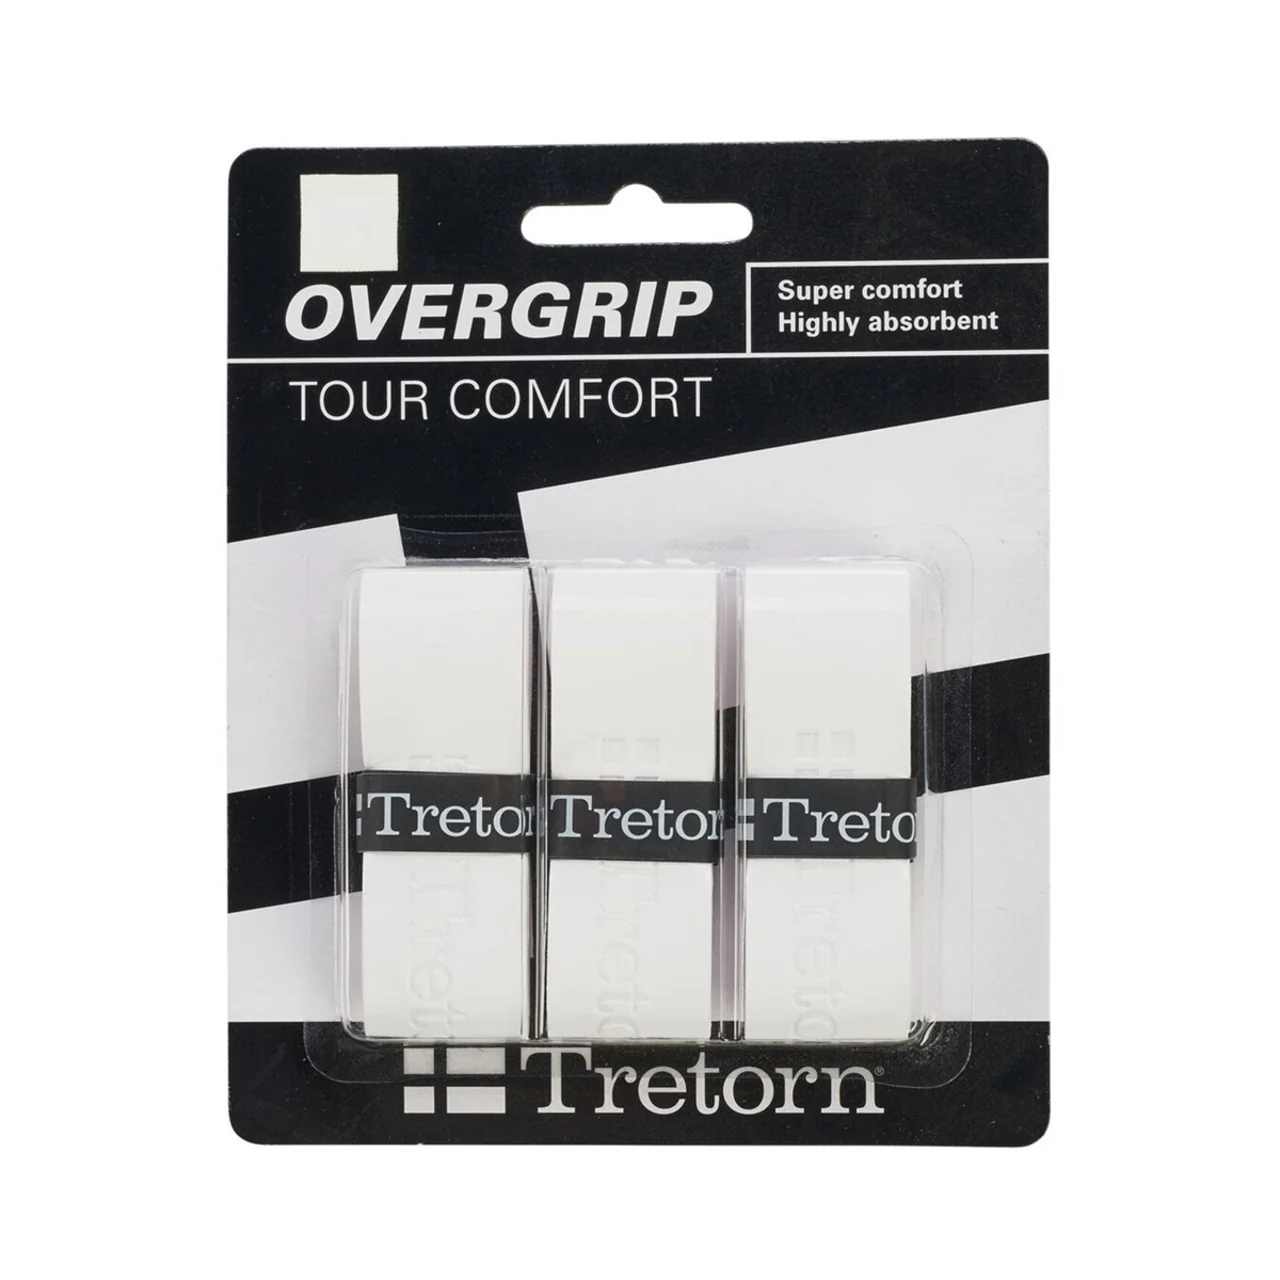 Tretorn Tour Comfort Overgrip